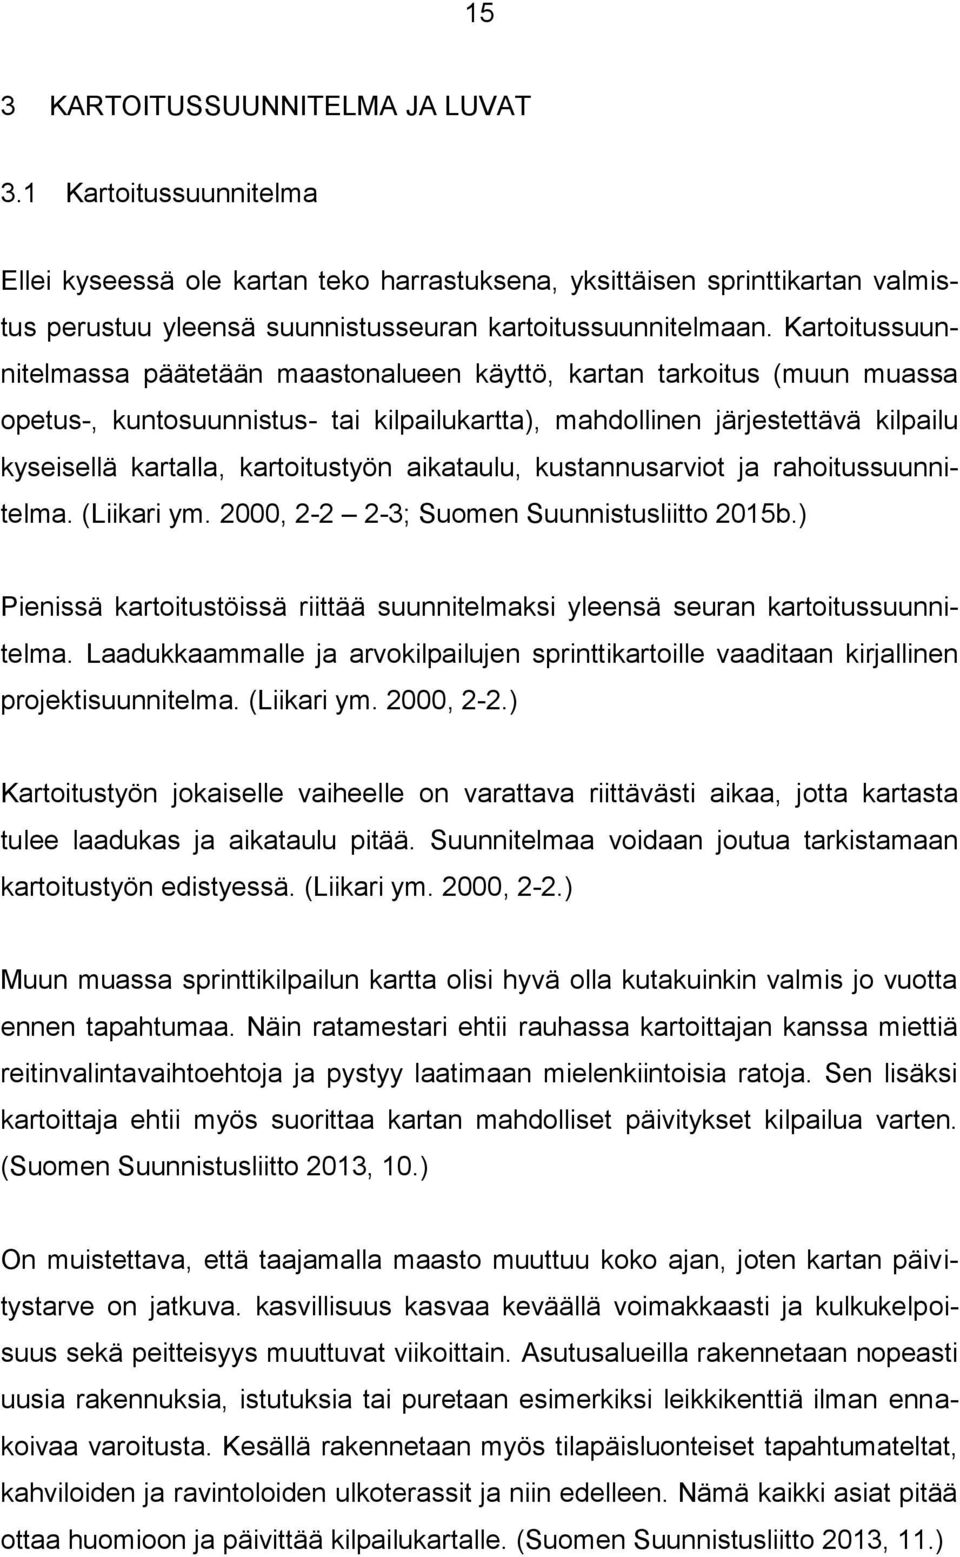 kartoitustyön aikataulu, kustannusarviot ja rahoitussuunnitelma. (Liikari ym. 2000, 2-2 2-3; Suomen Suunnistusliitto 2015b.